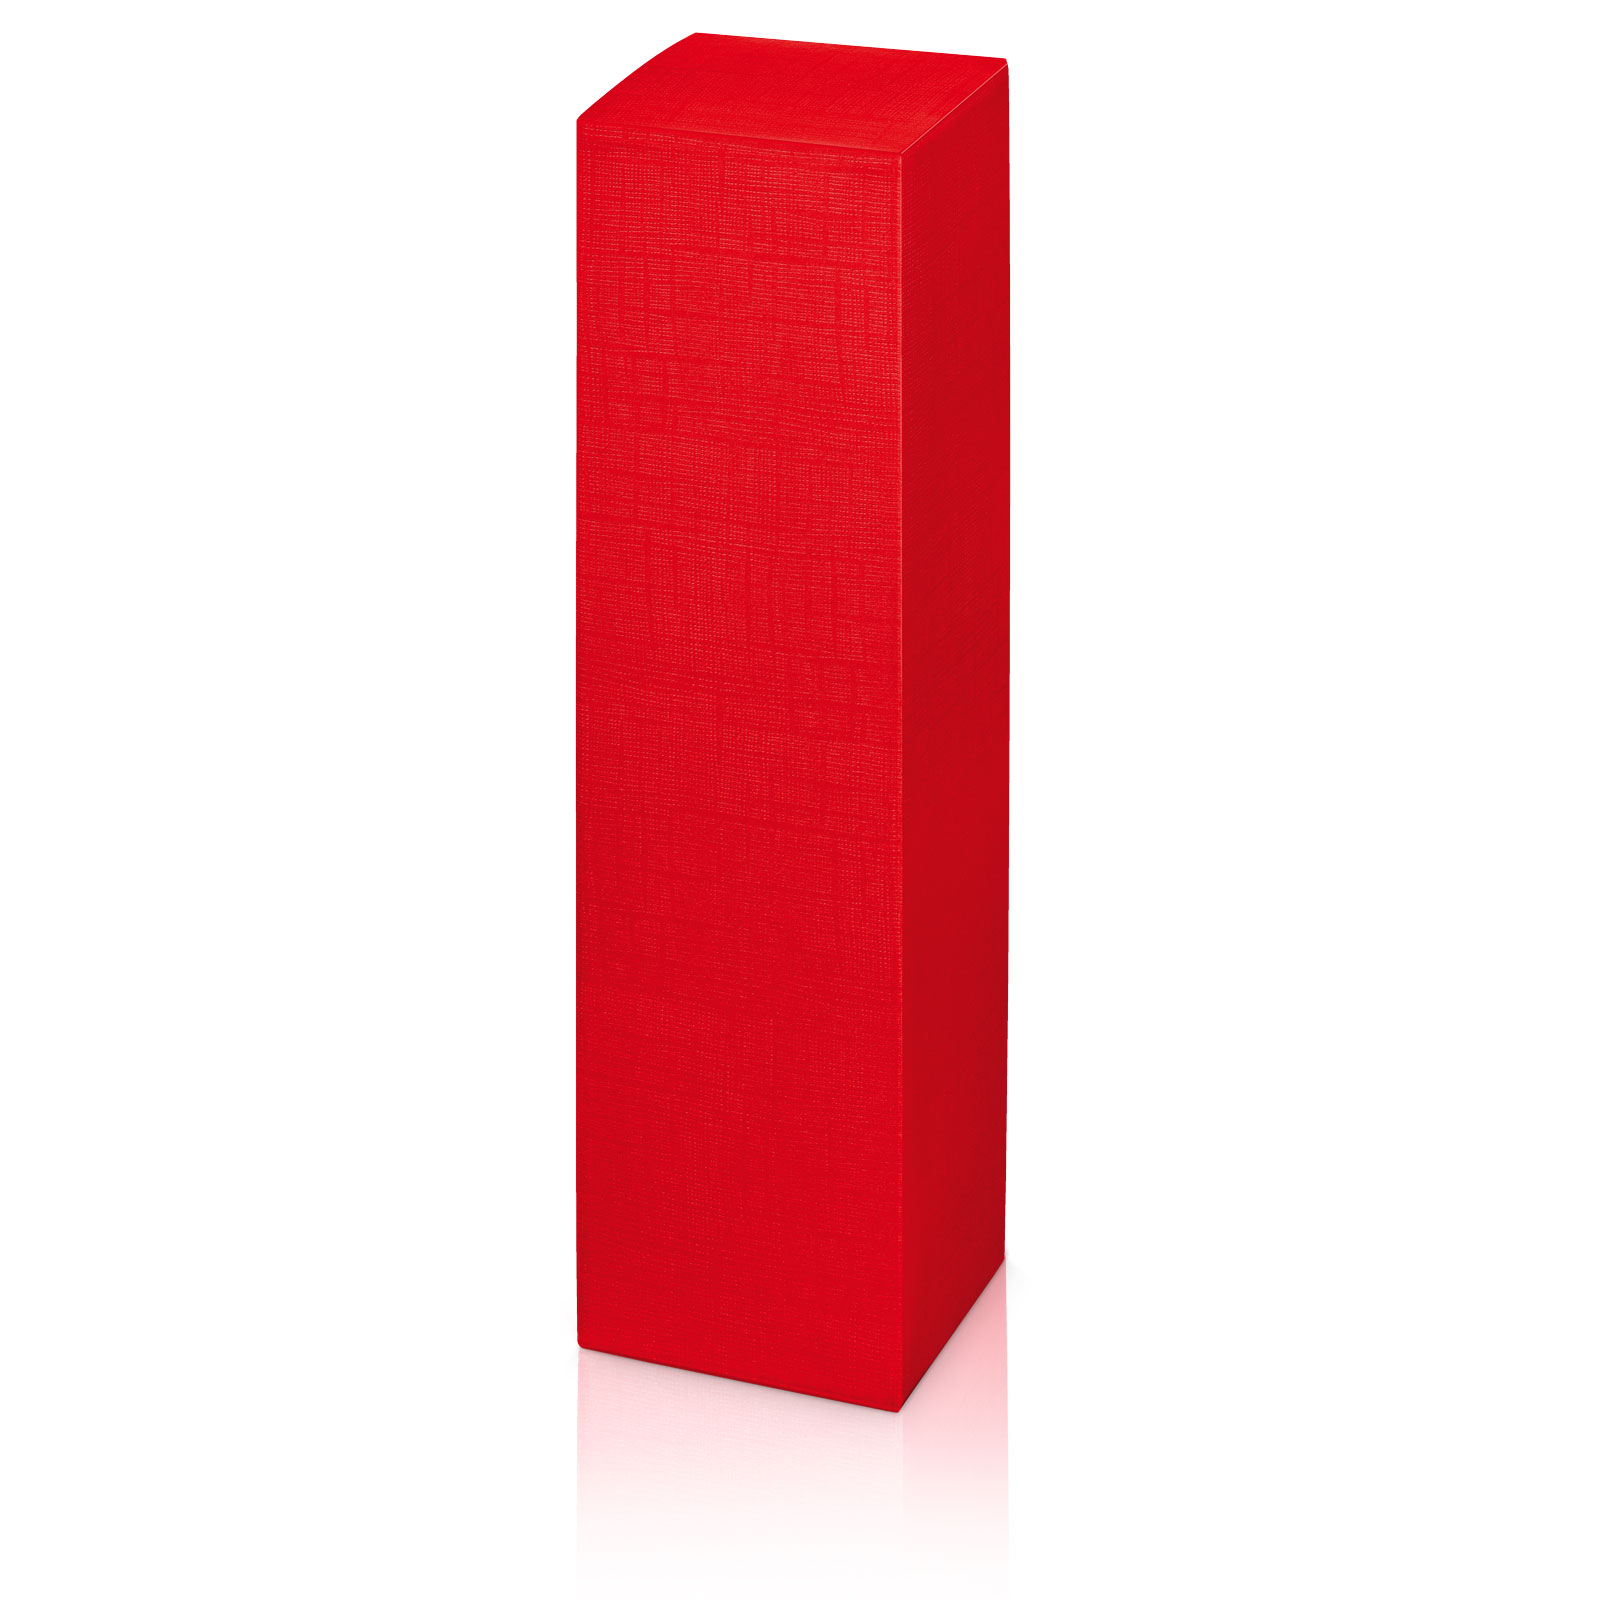 Flaschenkarton Strucktur rot stehend 90x90x355mm